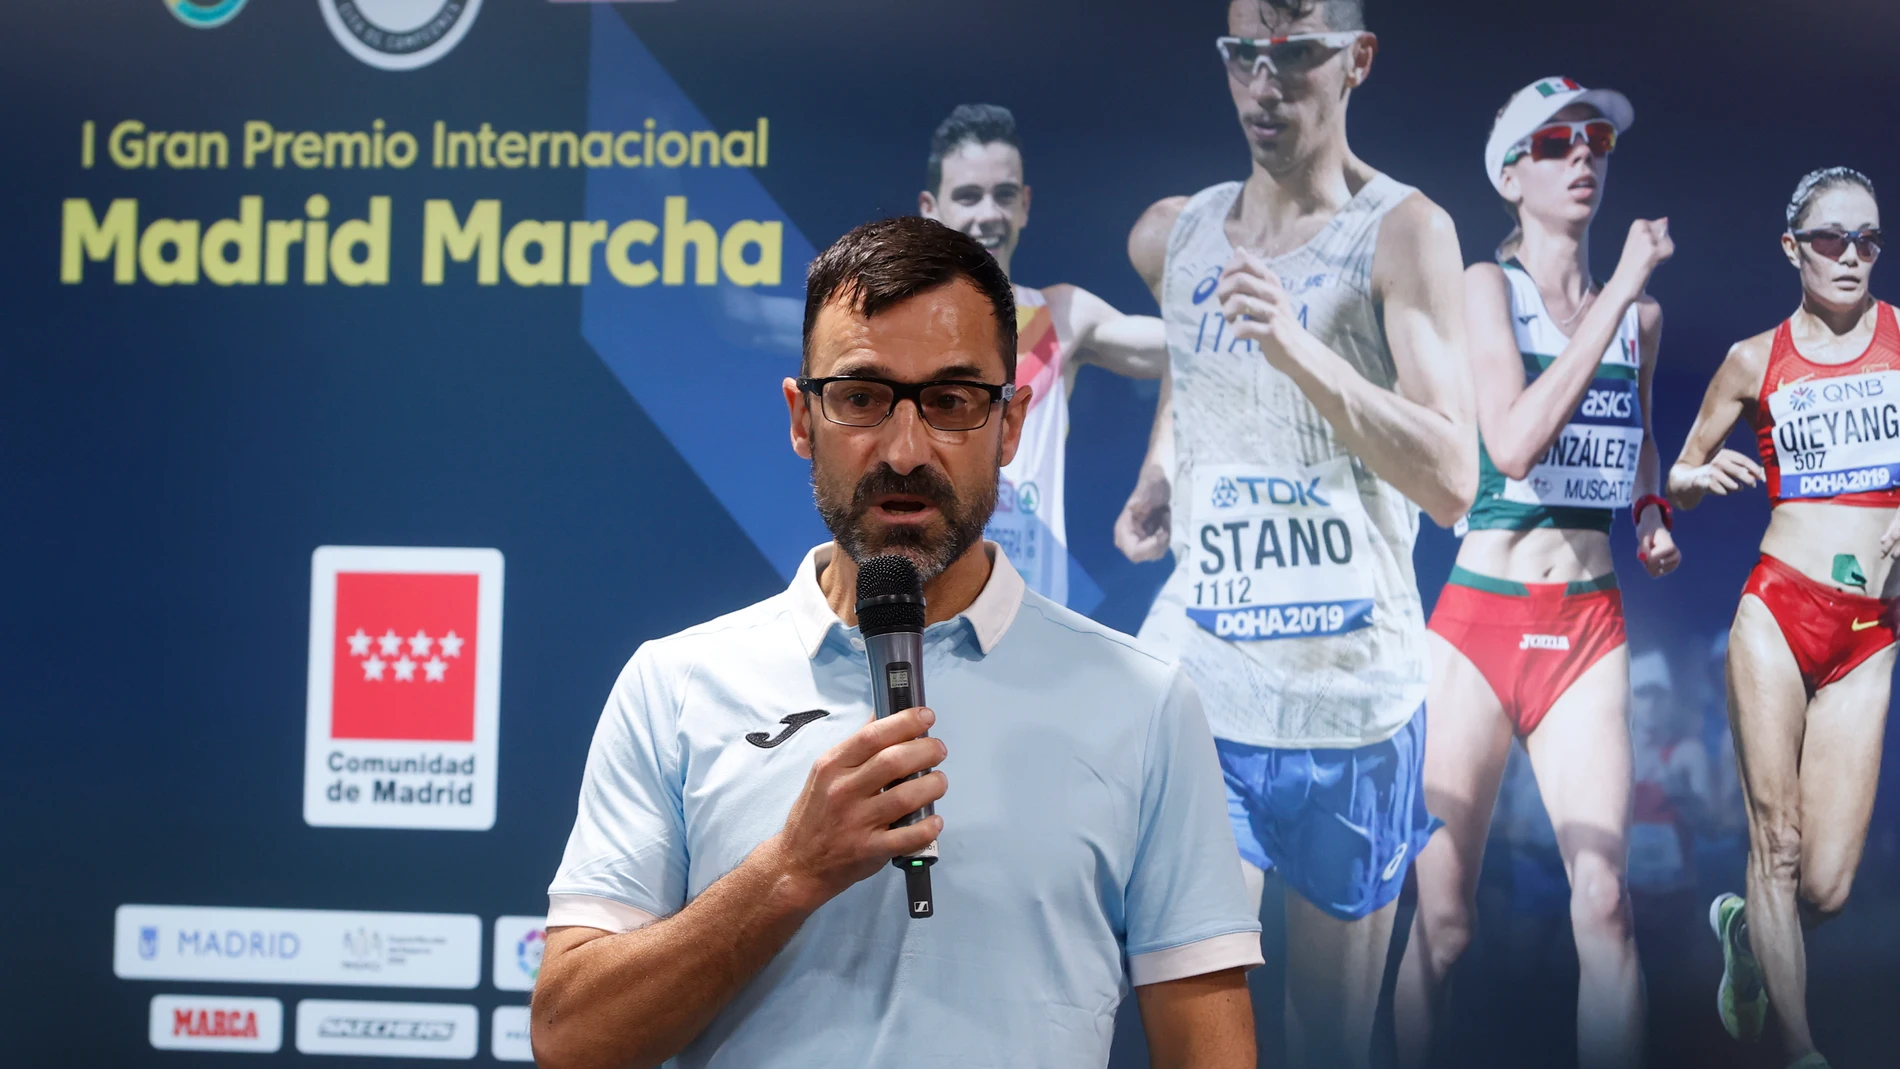 Chuso García Bragado será homenajeado antes del I Gran Premio Internacional de Atletismo Madrid Marcha, que se celebra el 16 de mayo